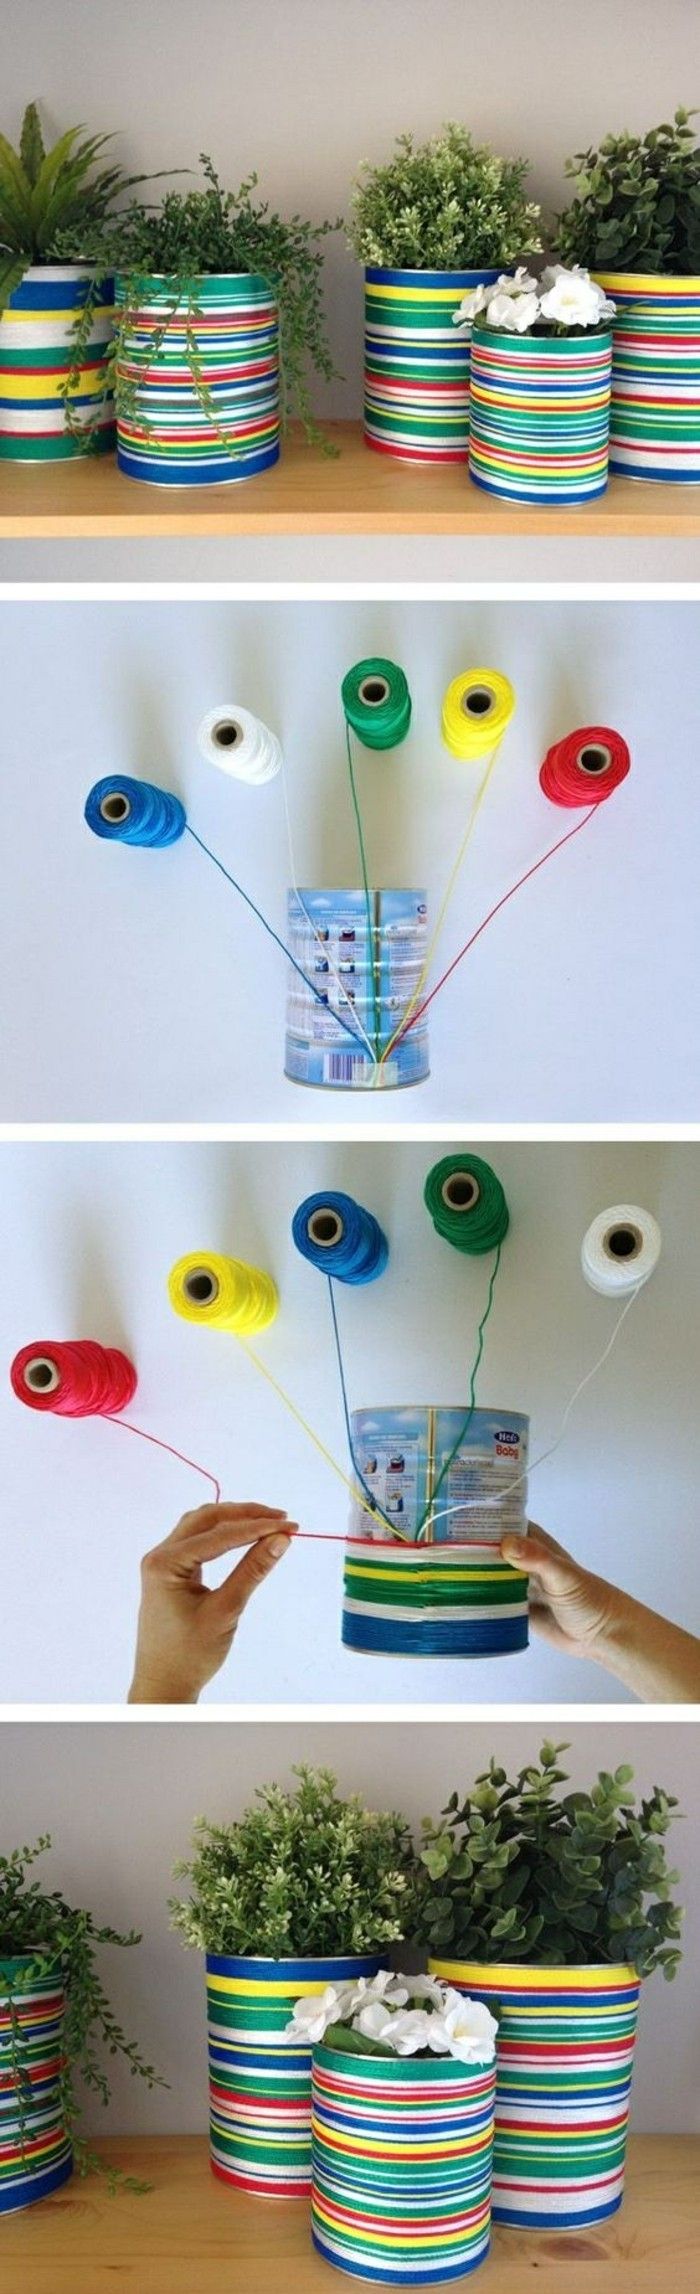 kreativa hantverks idéer-Pots-off plåtburkar-tråd-in-olika-färger